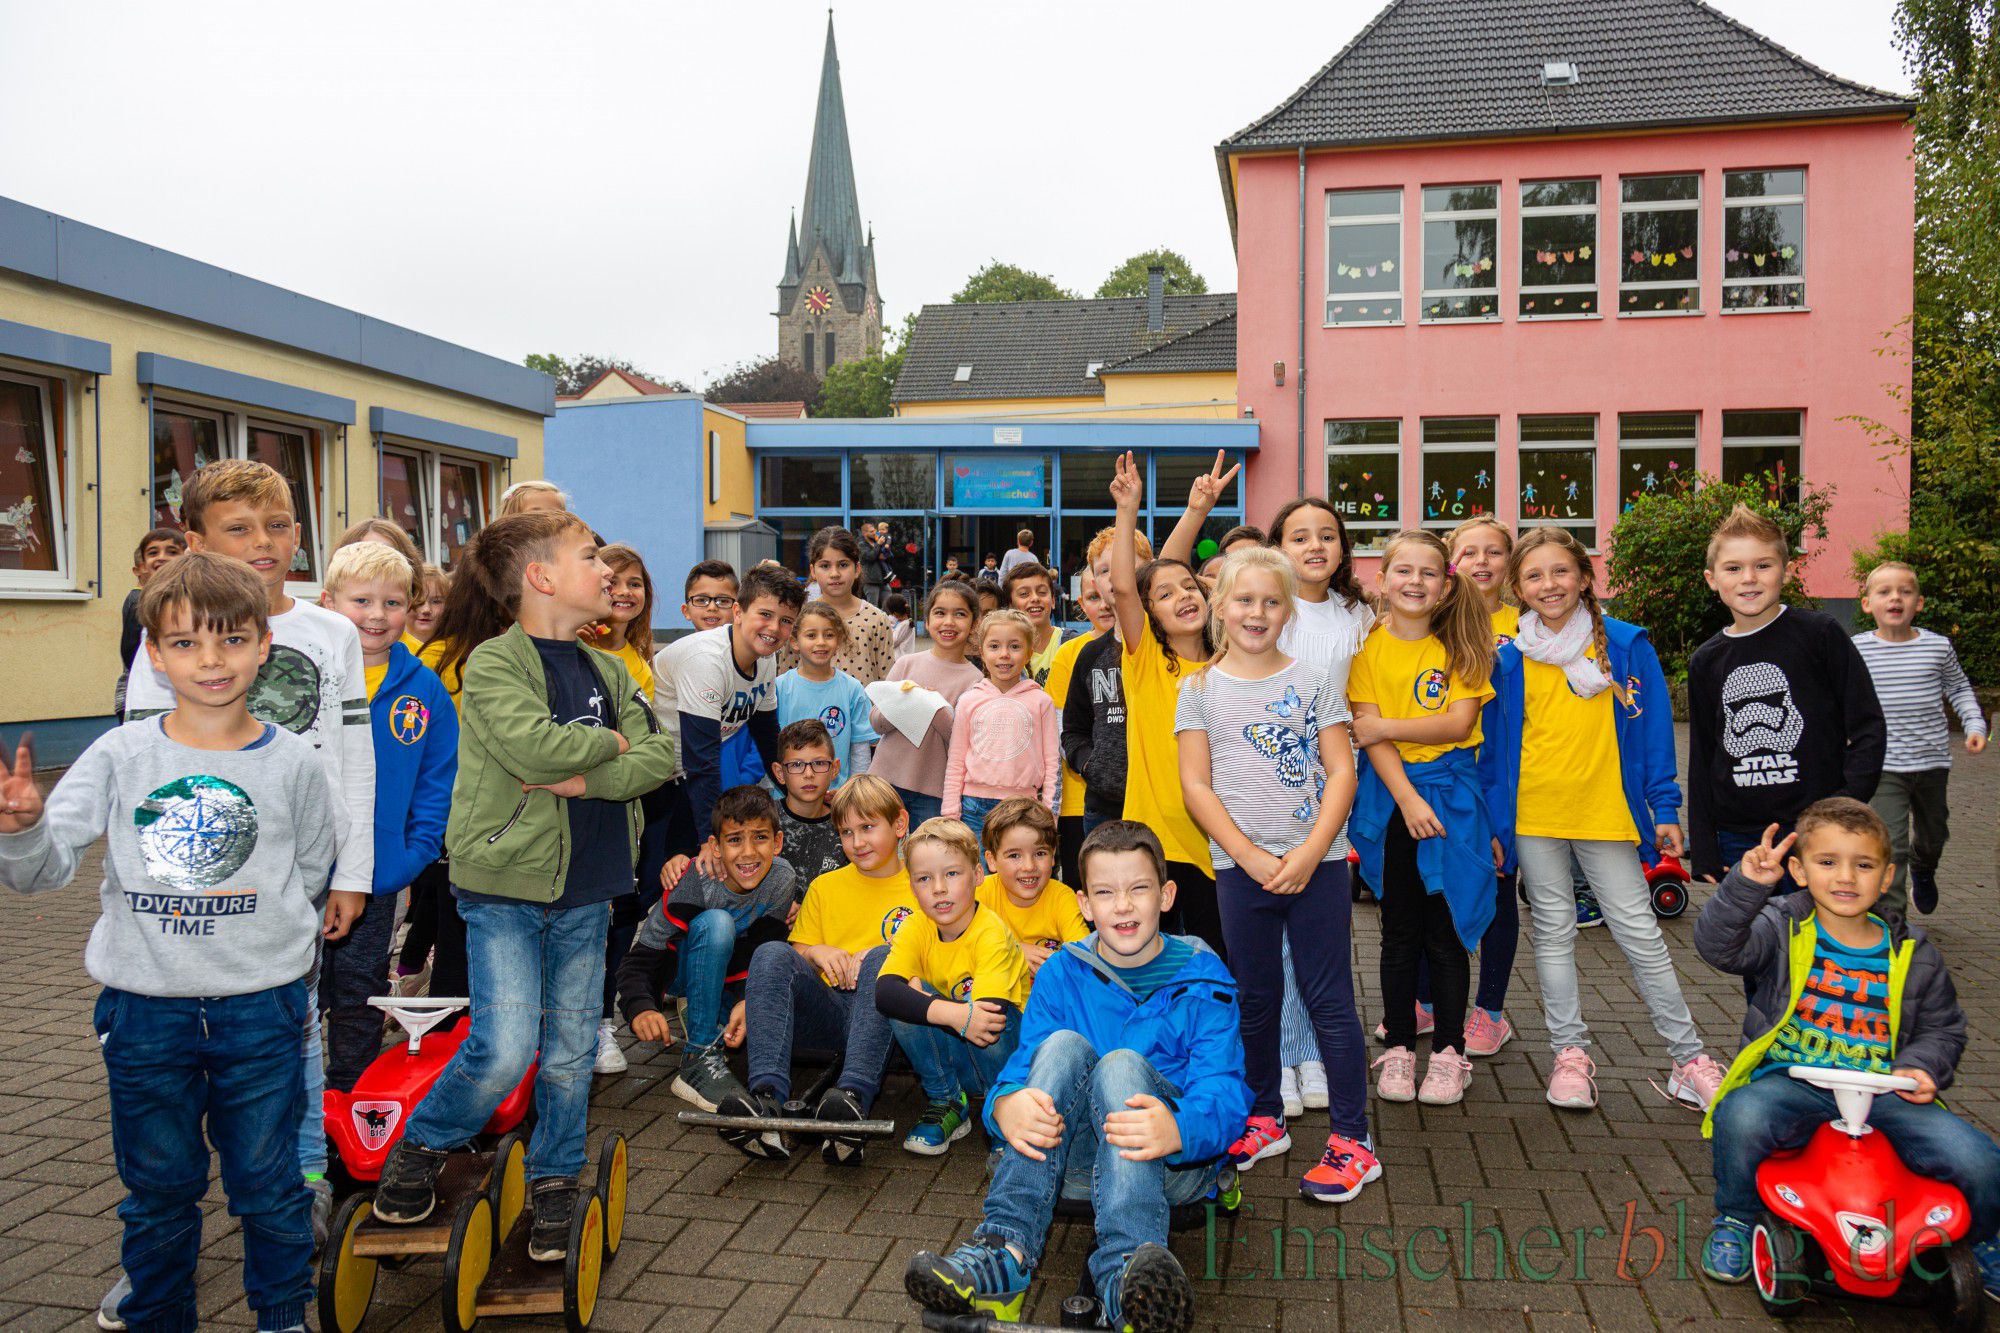 Hatten heute viel Spaß miteinander: Die Kinder der Aloysiusschule und der Karl-Brauckmann-Schule feierten heute ein buntes Spielfest miteinander. (Foto: P. Gräber - Emscherblog)